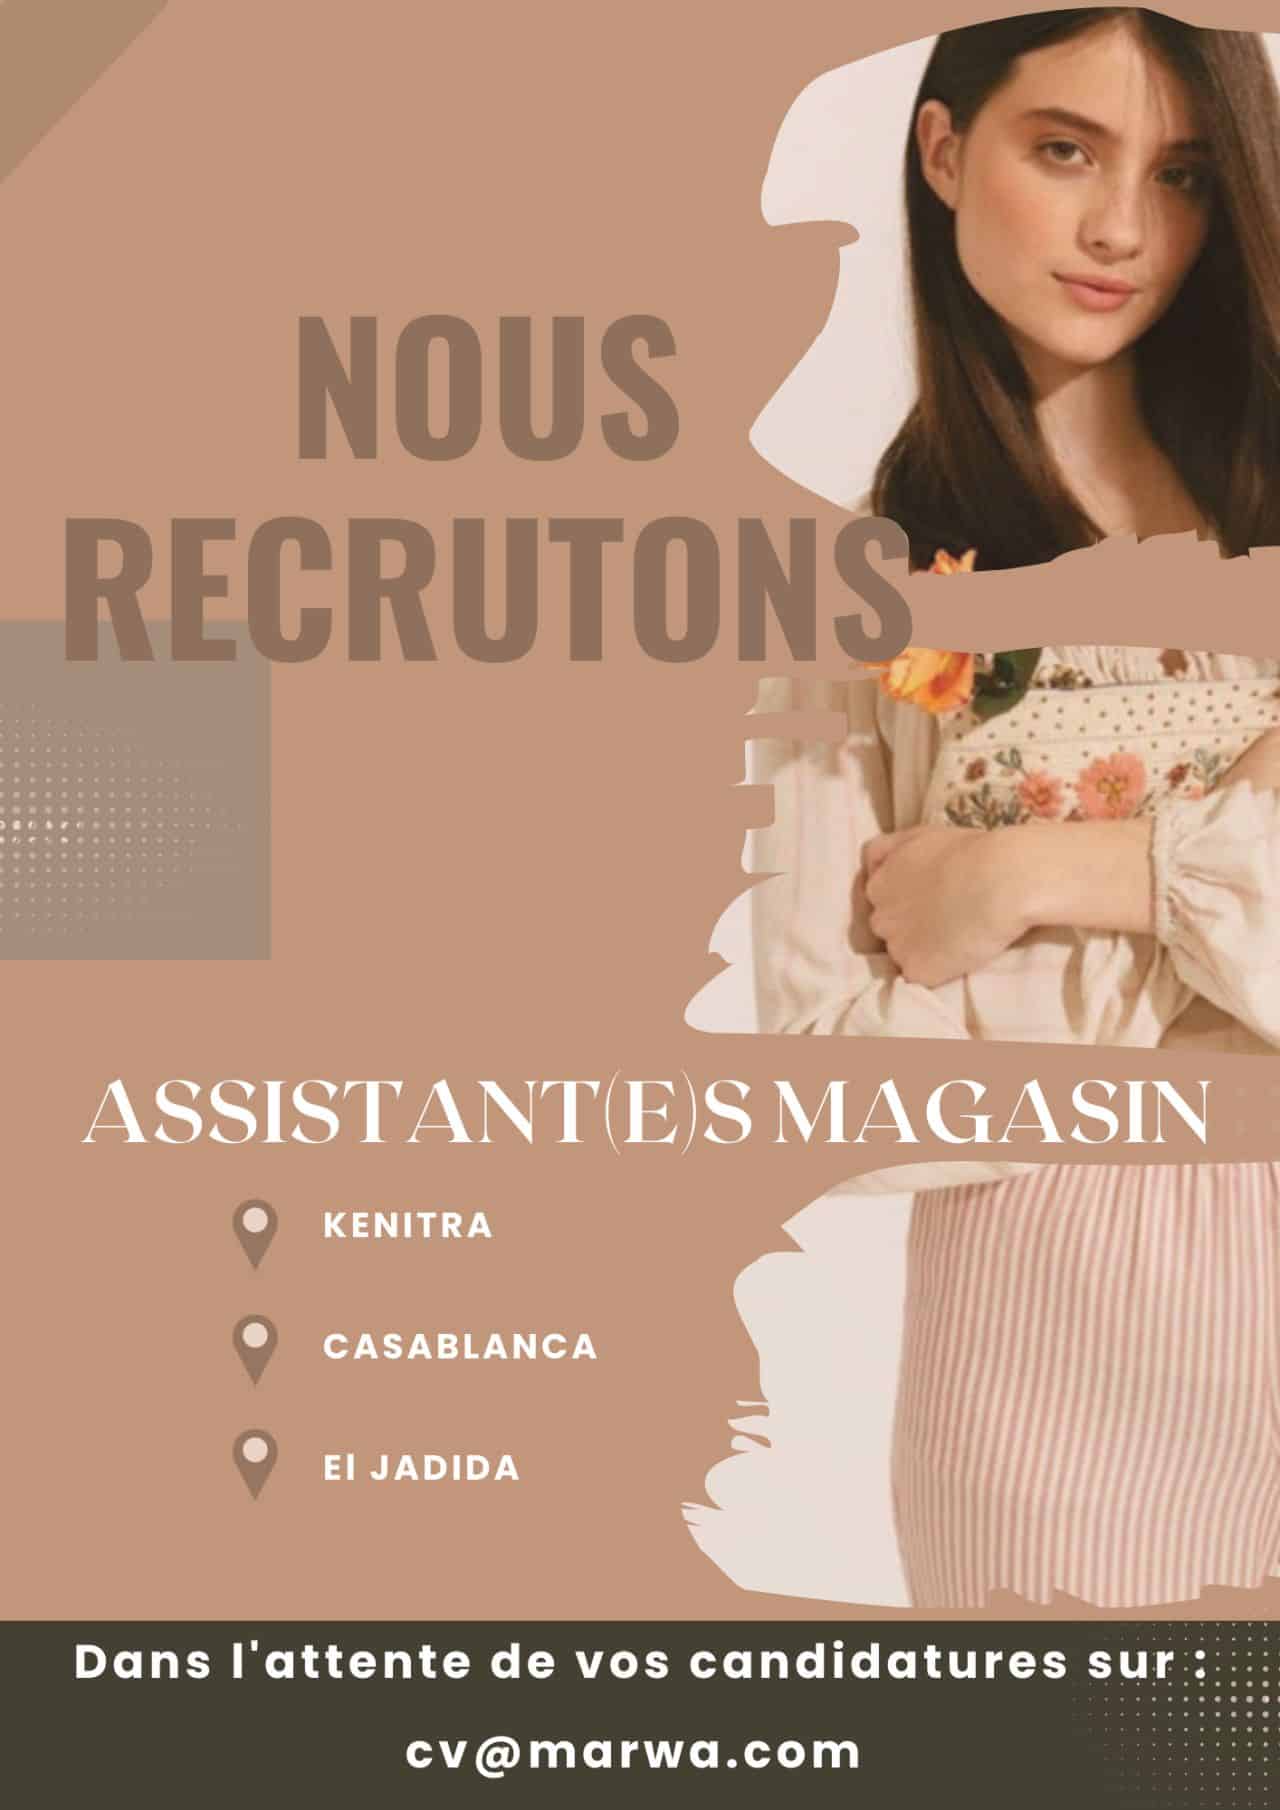 Marwa recrute des Assistant(e)s Magasin